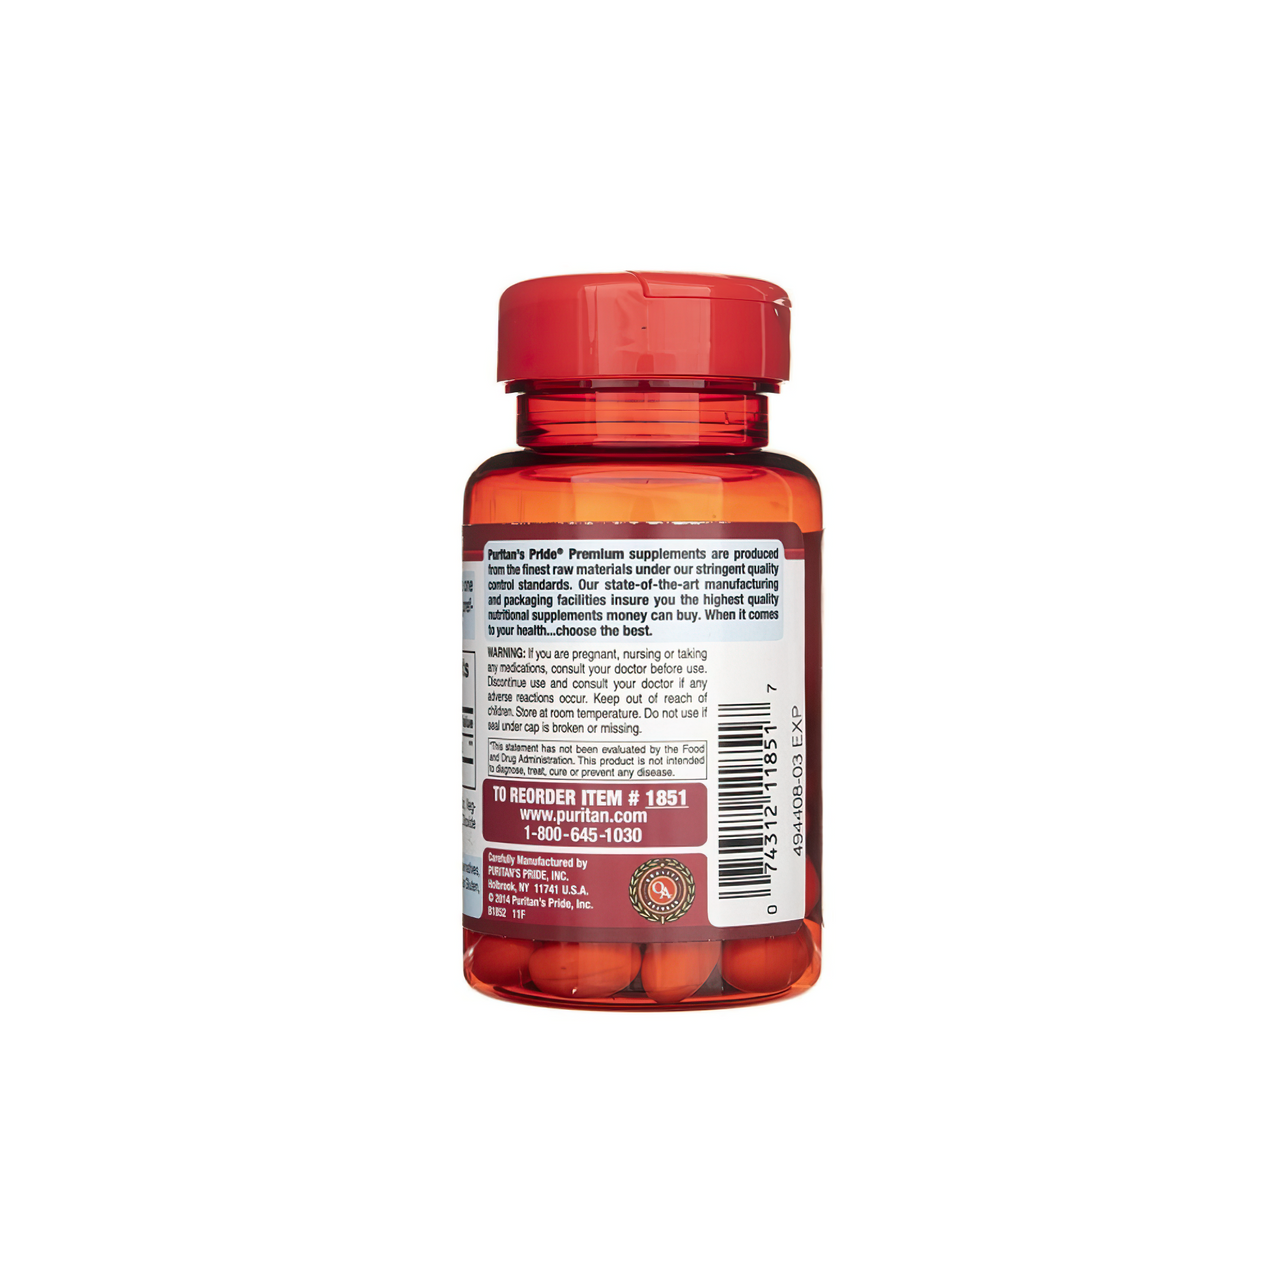 Eine Flasche Coenzym Q10 - 120 mg 60 Rapid Release softgels von Puritan's Pride auf weißem Hintergrund.